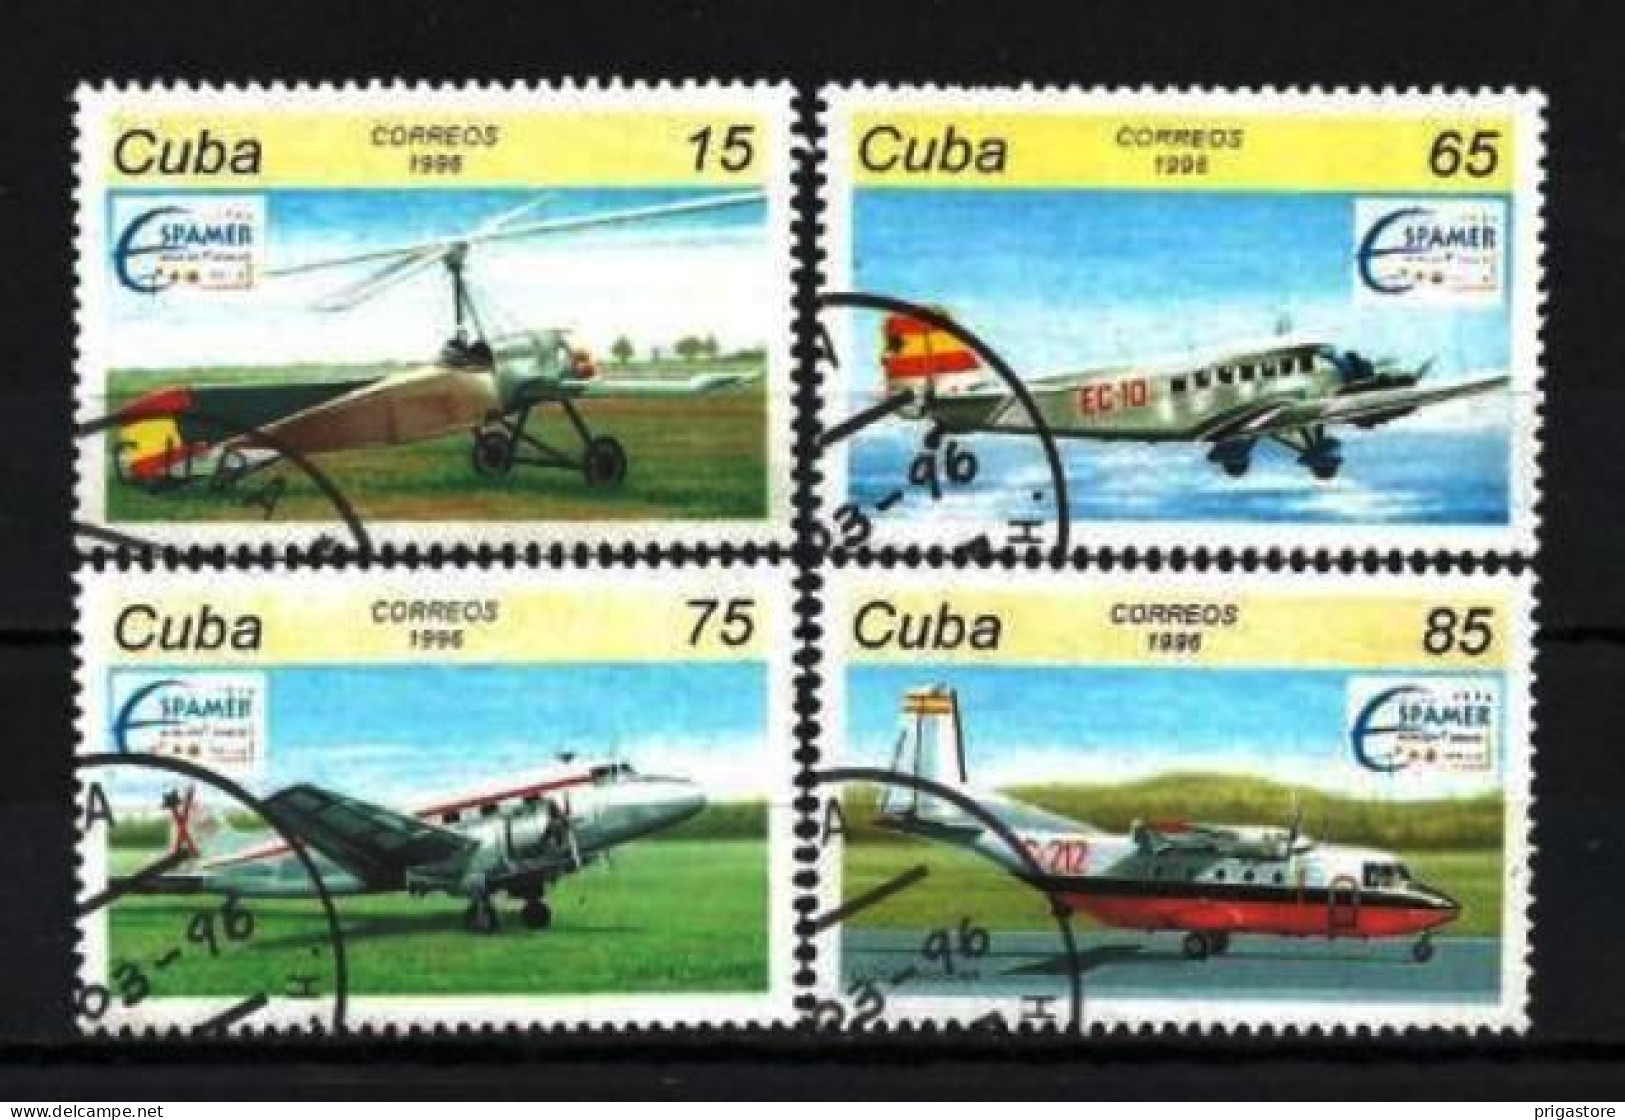 Cuba 1996 Avions (28) Yvert N° 3520 à 3523 Oblitéré Used - Usados